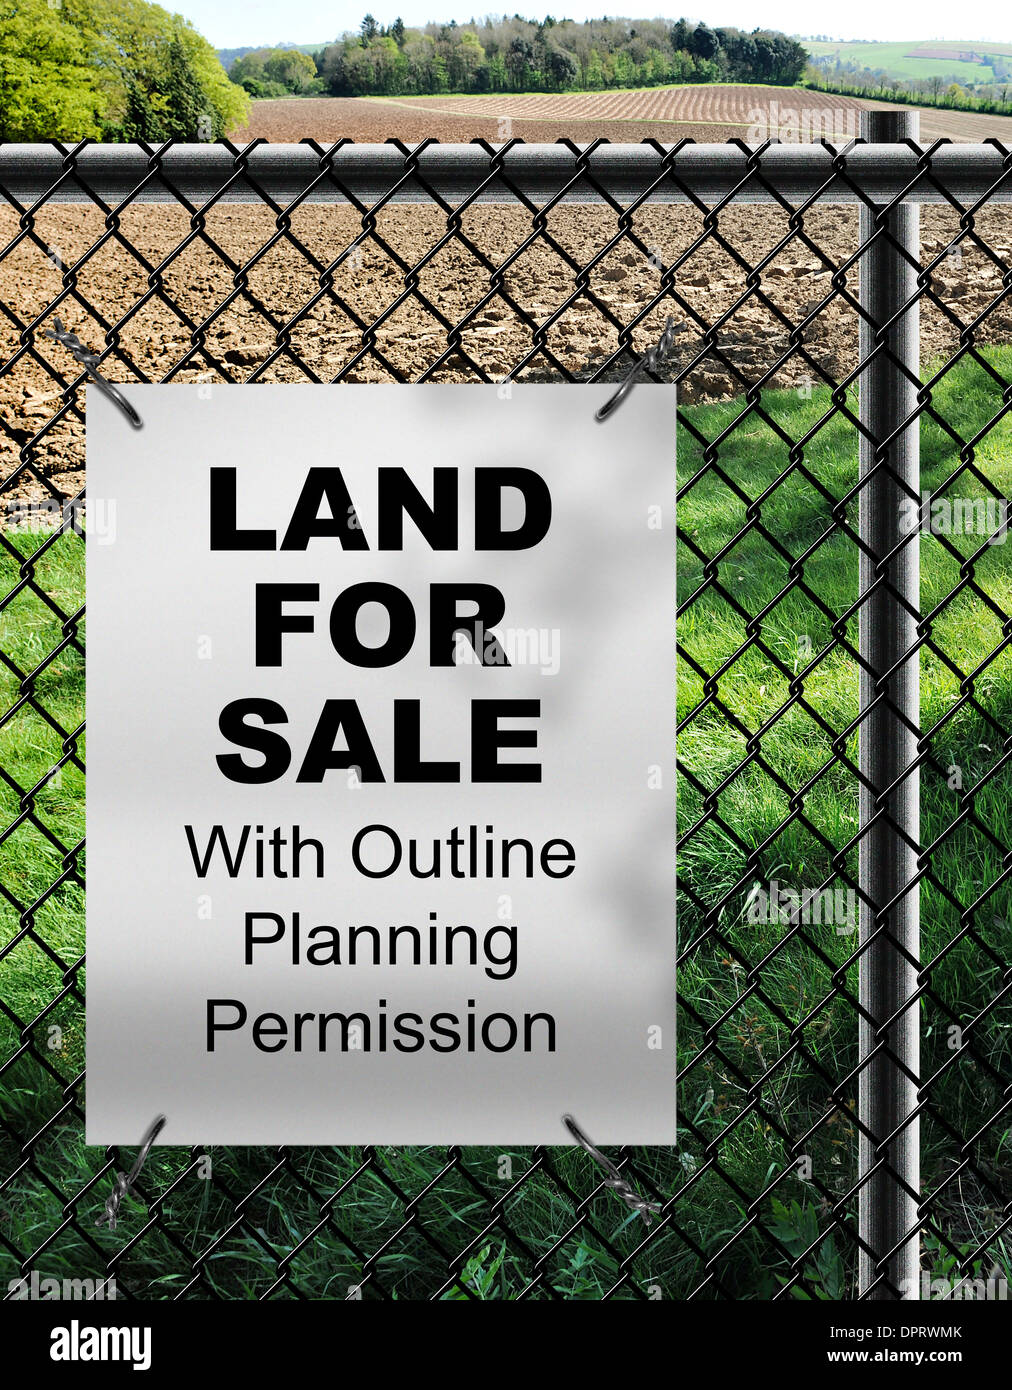 Bauland zum Verkauf von mit Umriss Baugenehmigung Zeichen auf Draht Zäune befestigt. Stockfoto